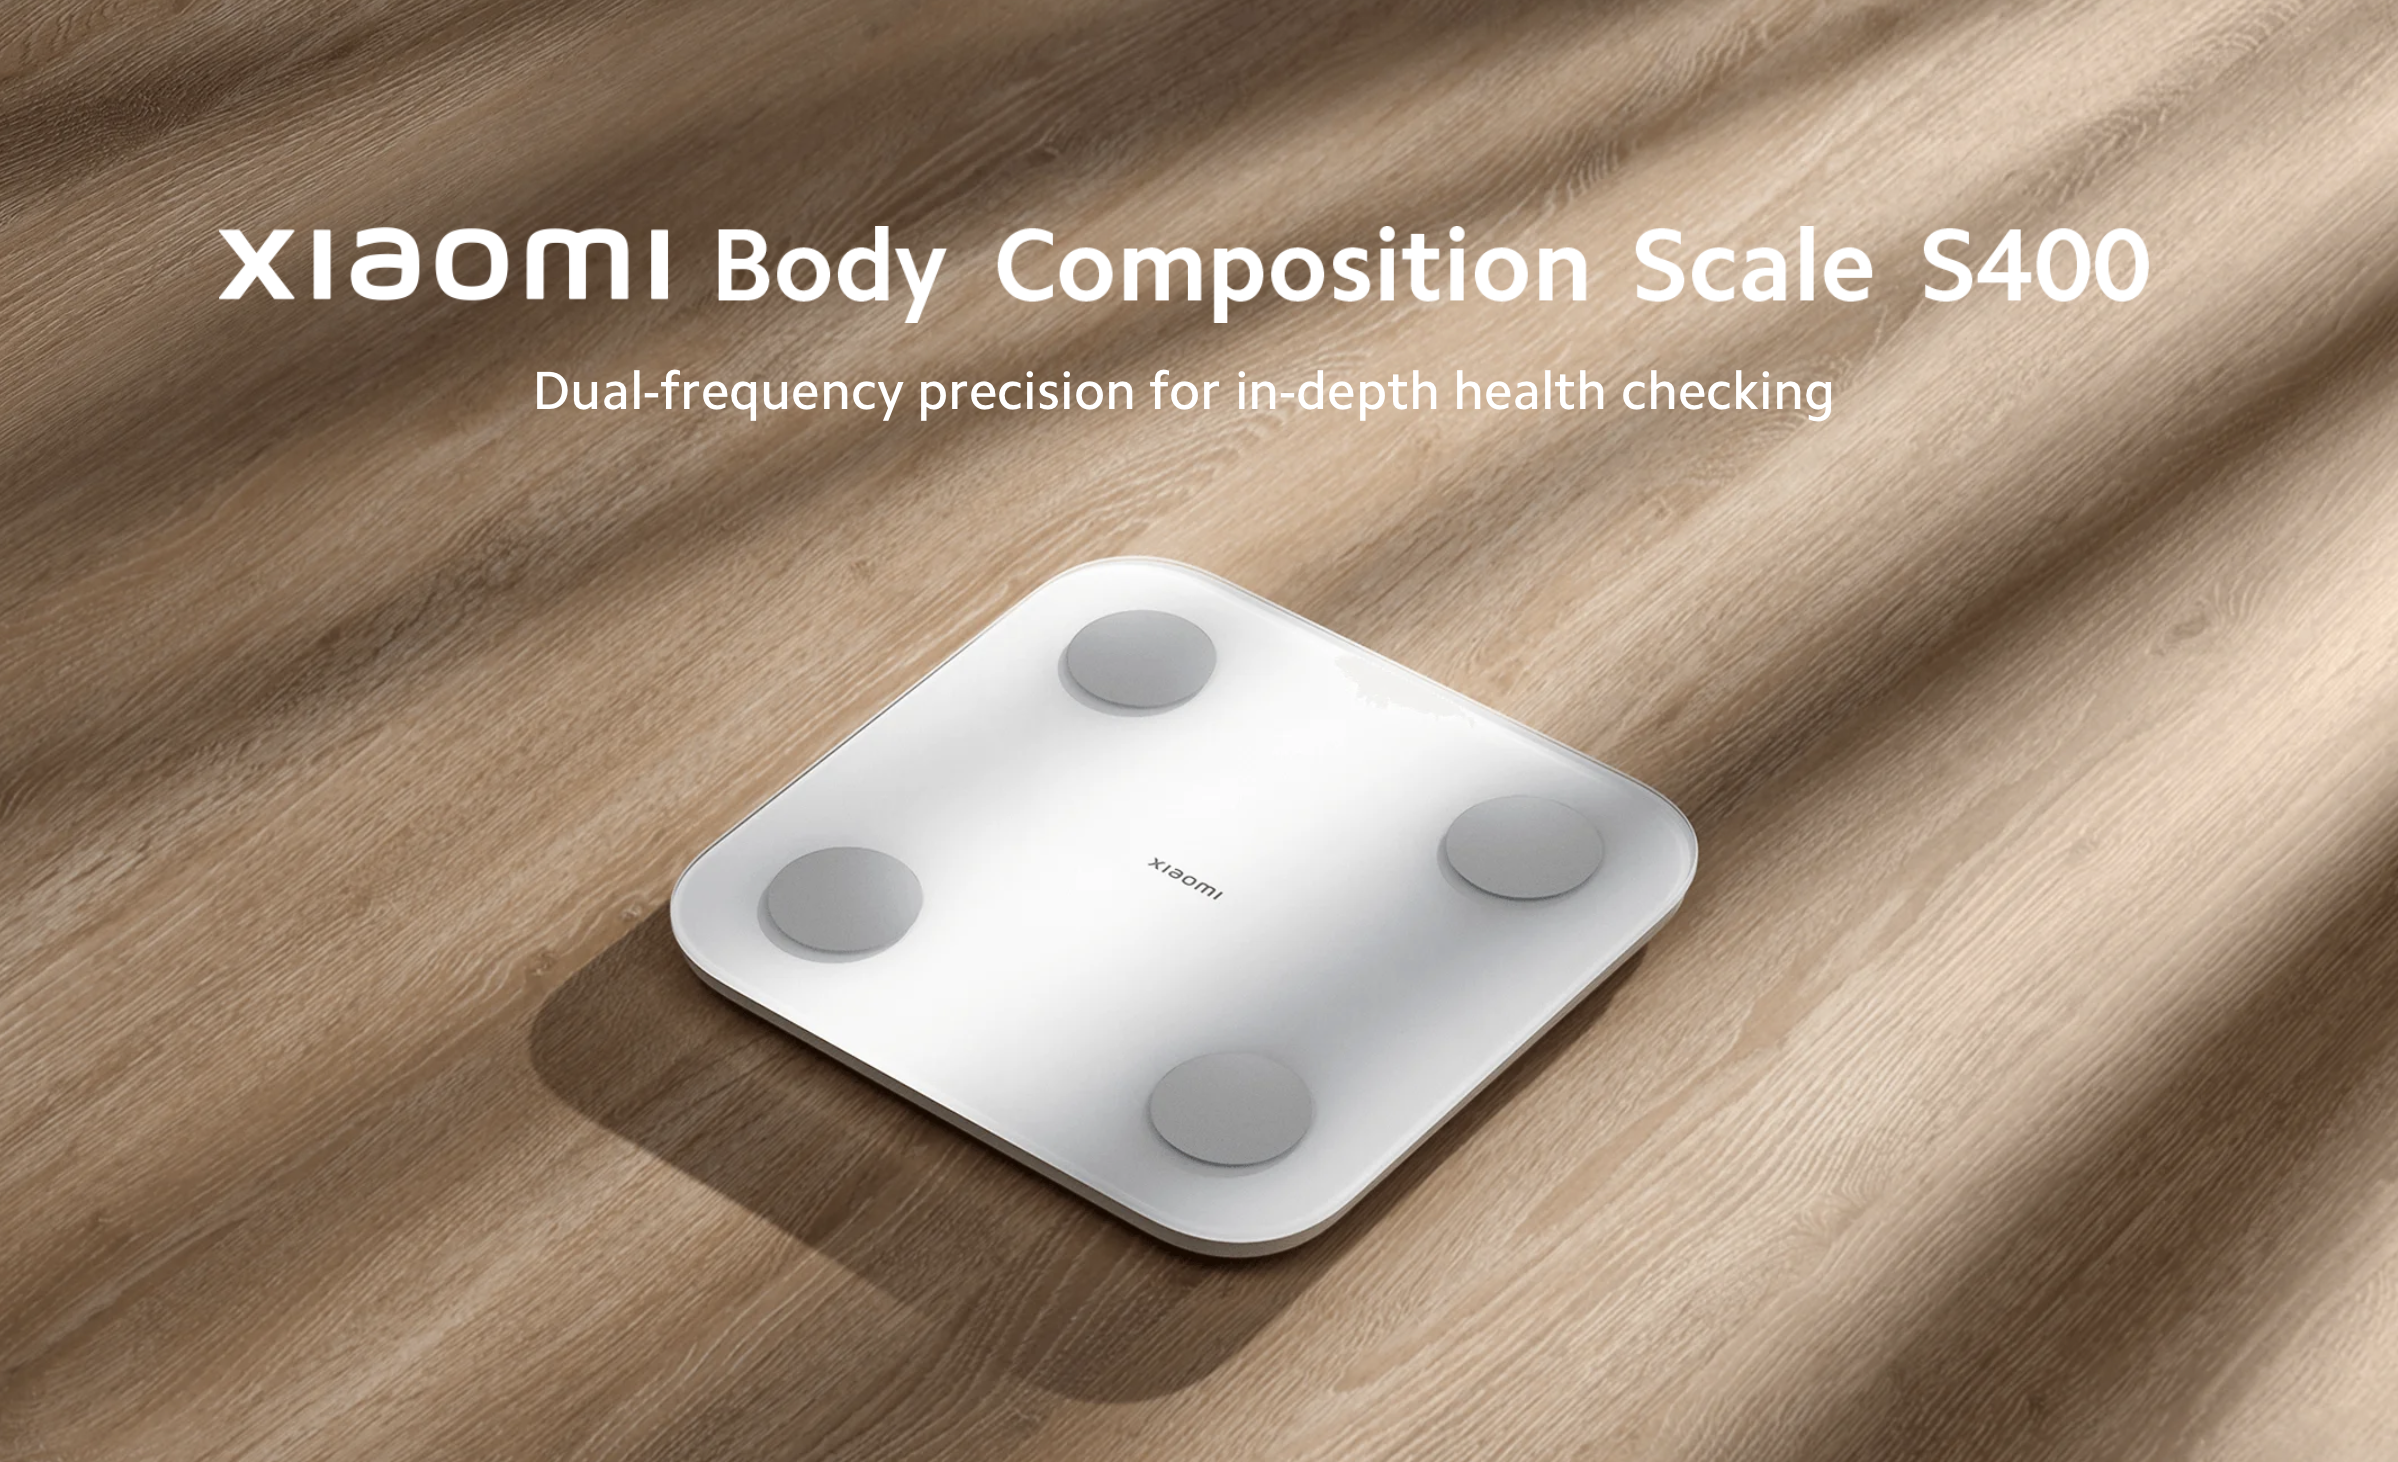 Xiaomi presenta en el mercado mundial la báscula de composición corporal S400, capaz de medir 25 indicadores de salud